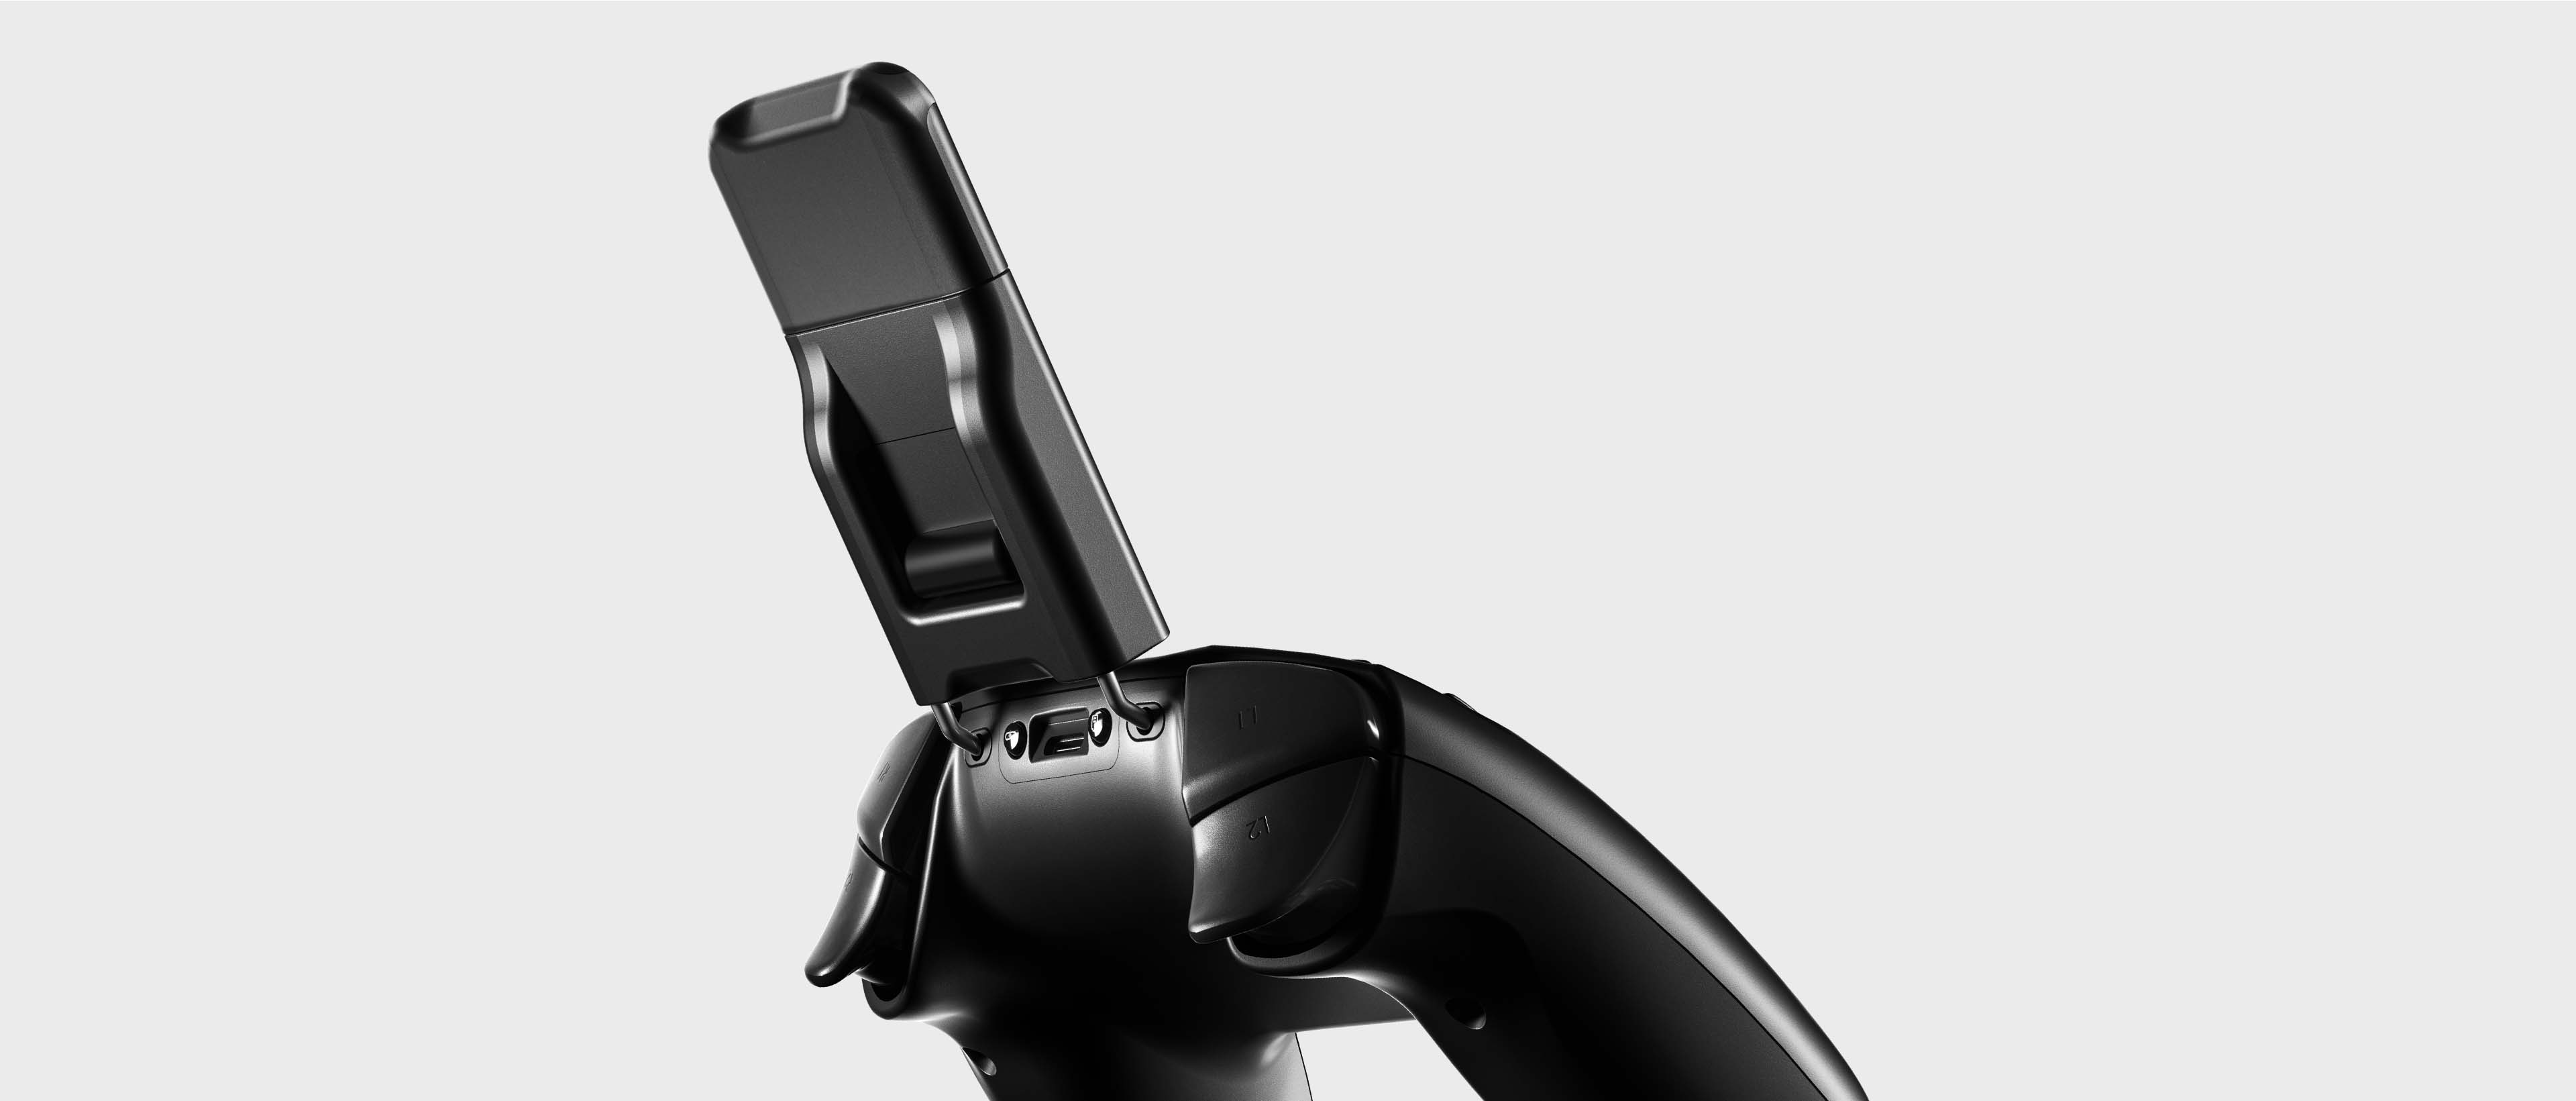 Stratus+ 超薄手機支架支援 360° 的角度調整，官方建售價 2,390 元。